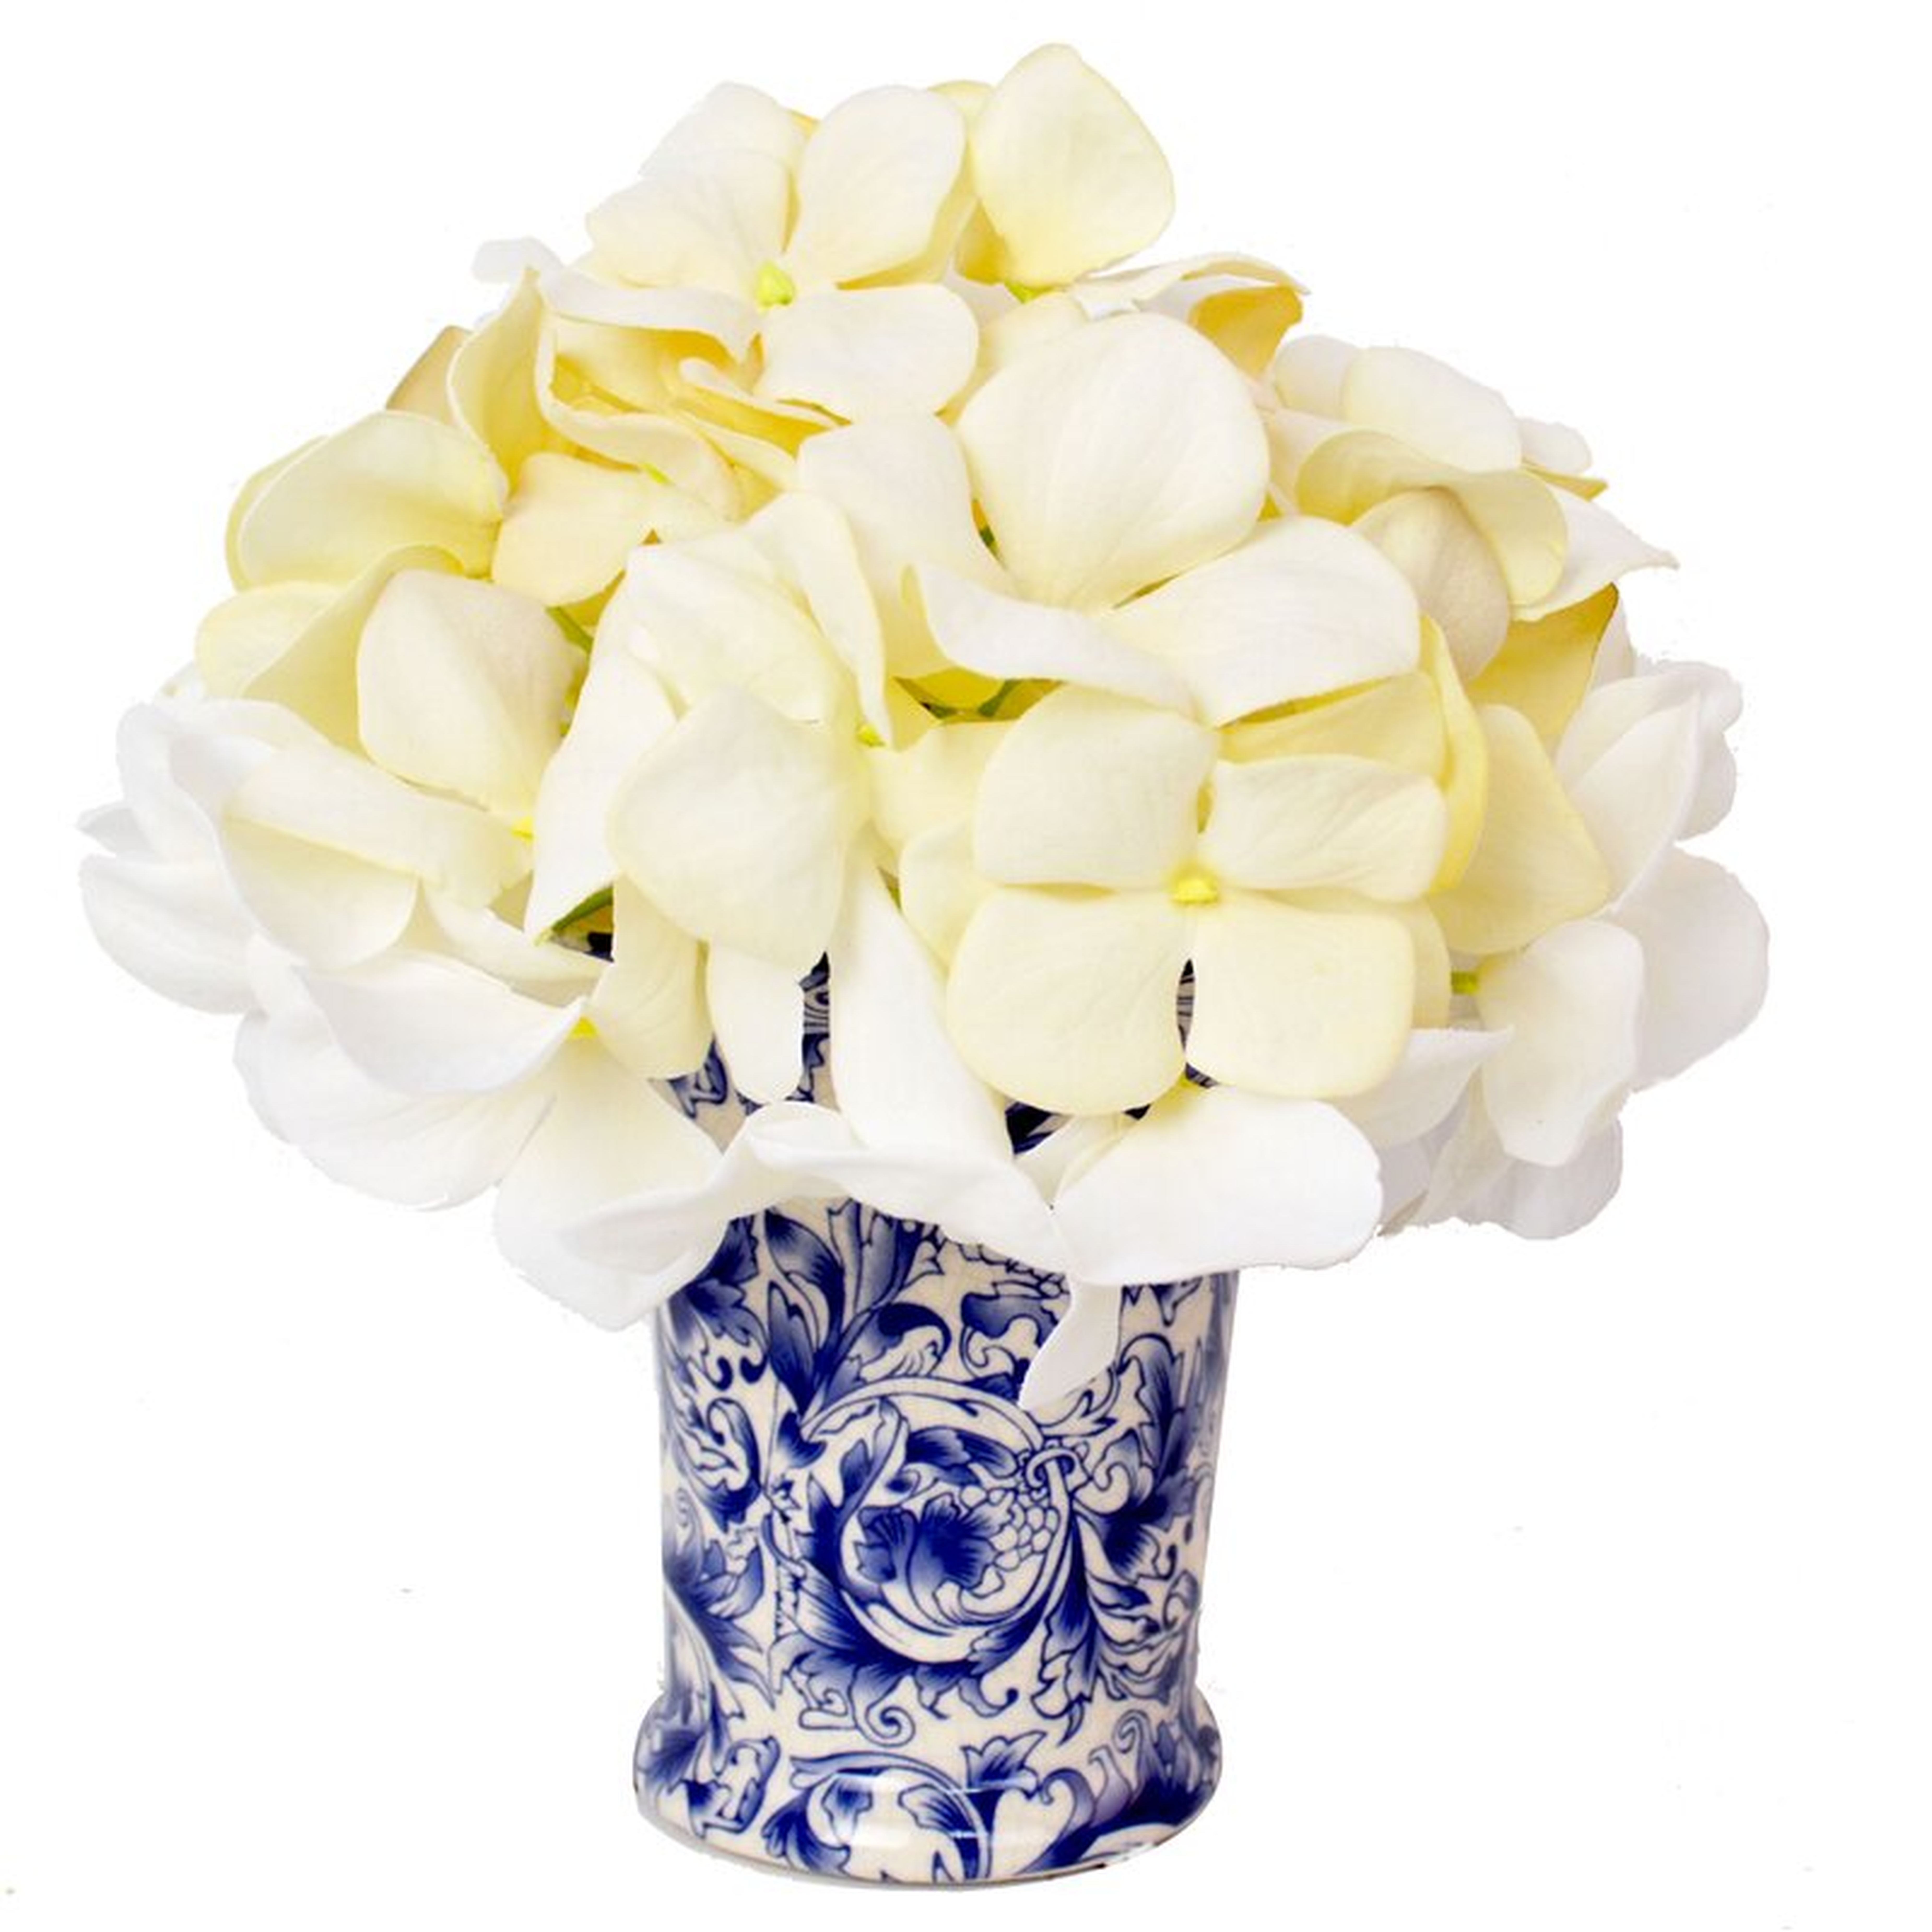 Crème Hydrangea Floral Arrangement in Chinoiserie Vase - Birch Lane